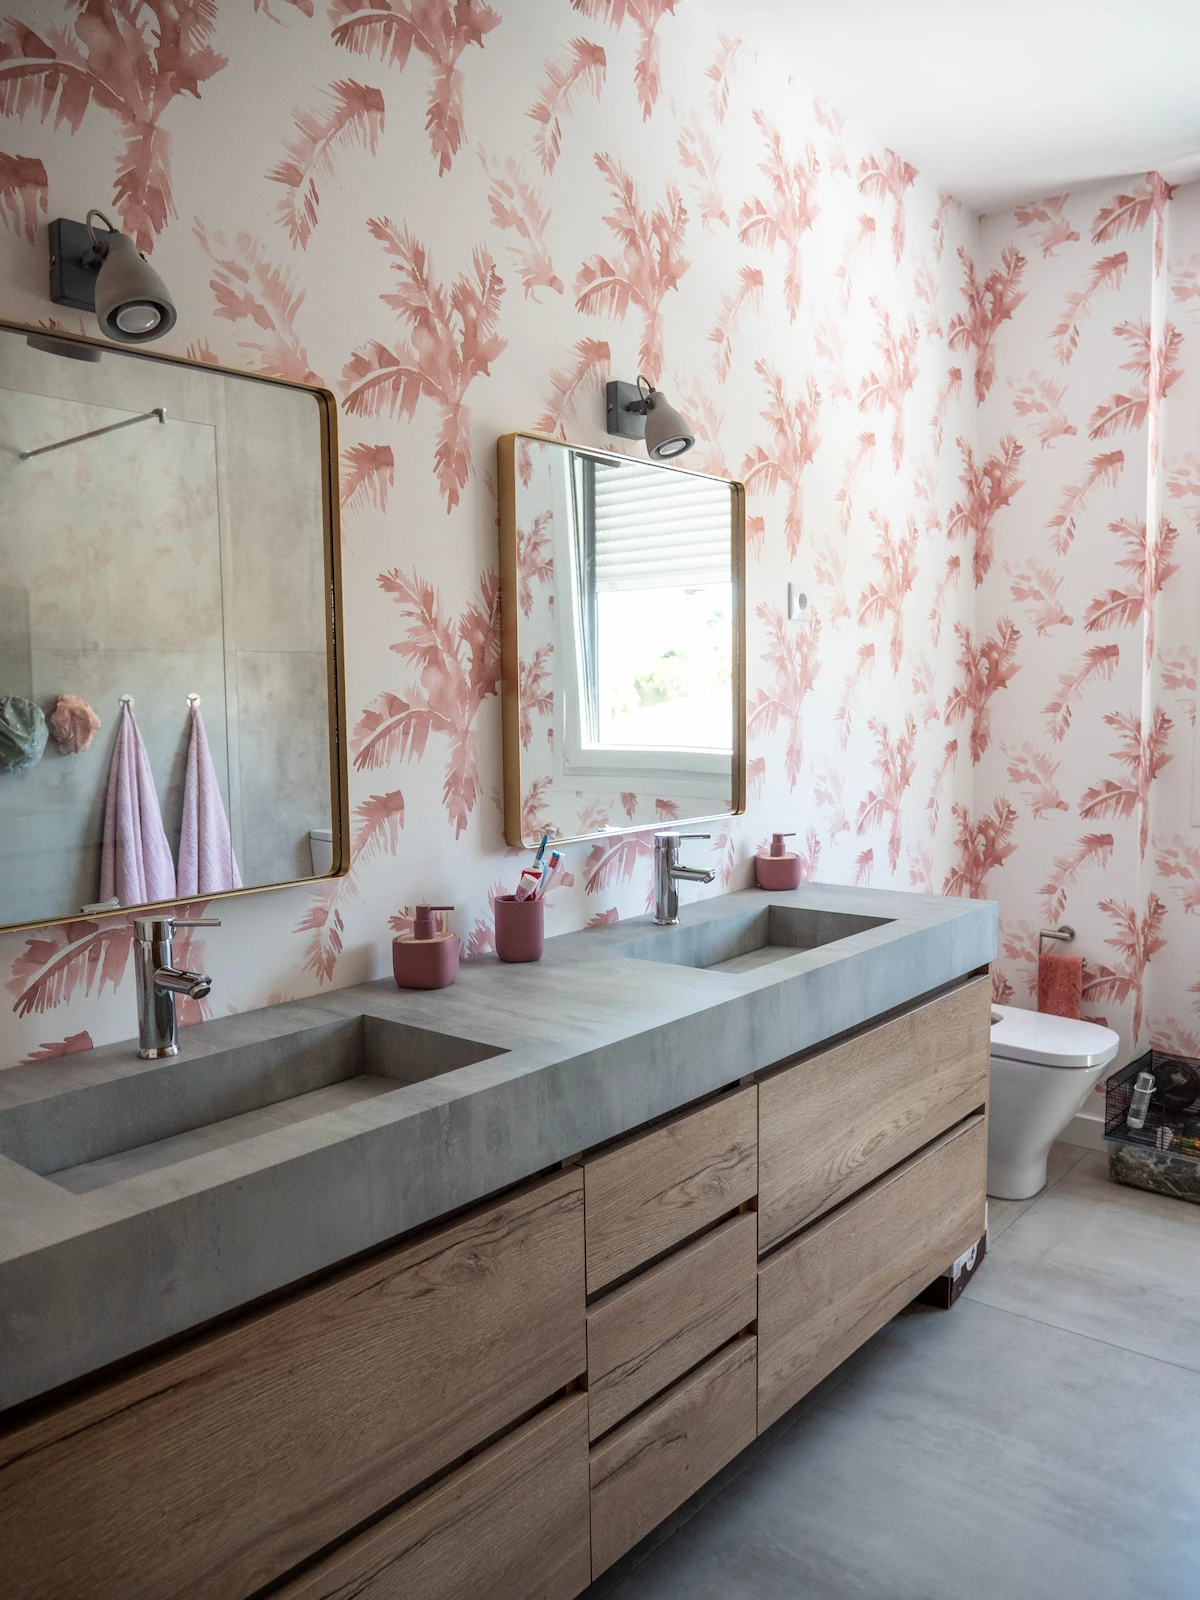 baño rosa vivienda prefabricada pozuelo